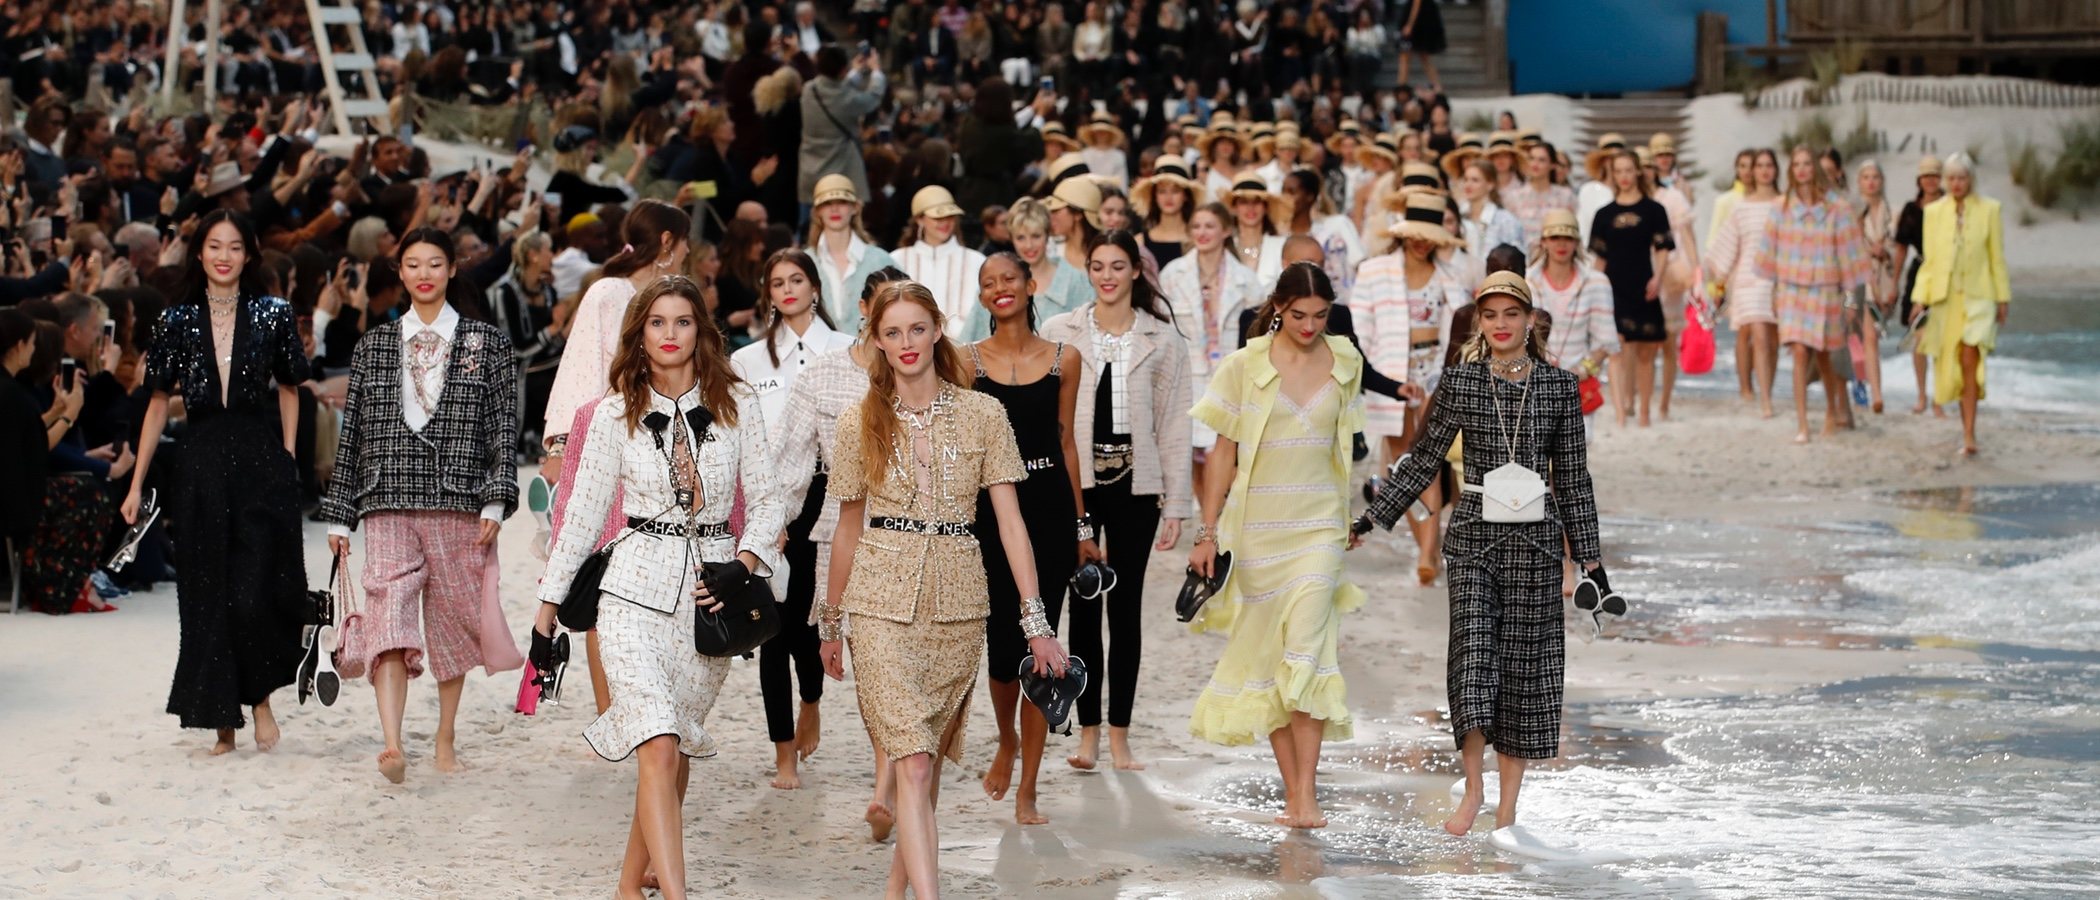 Una idílica playa llega al centro de la París Fashion Week con el desfile más veraniego de Chanel